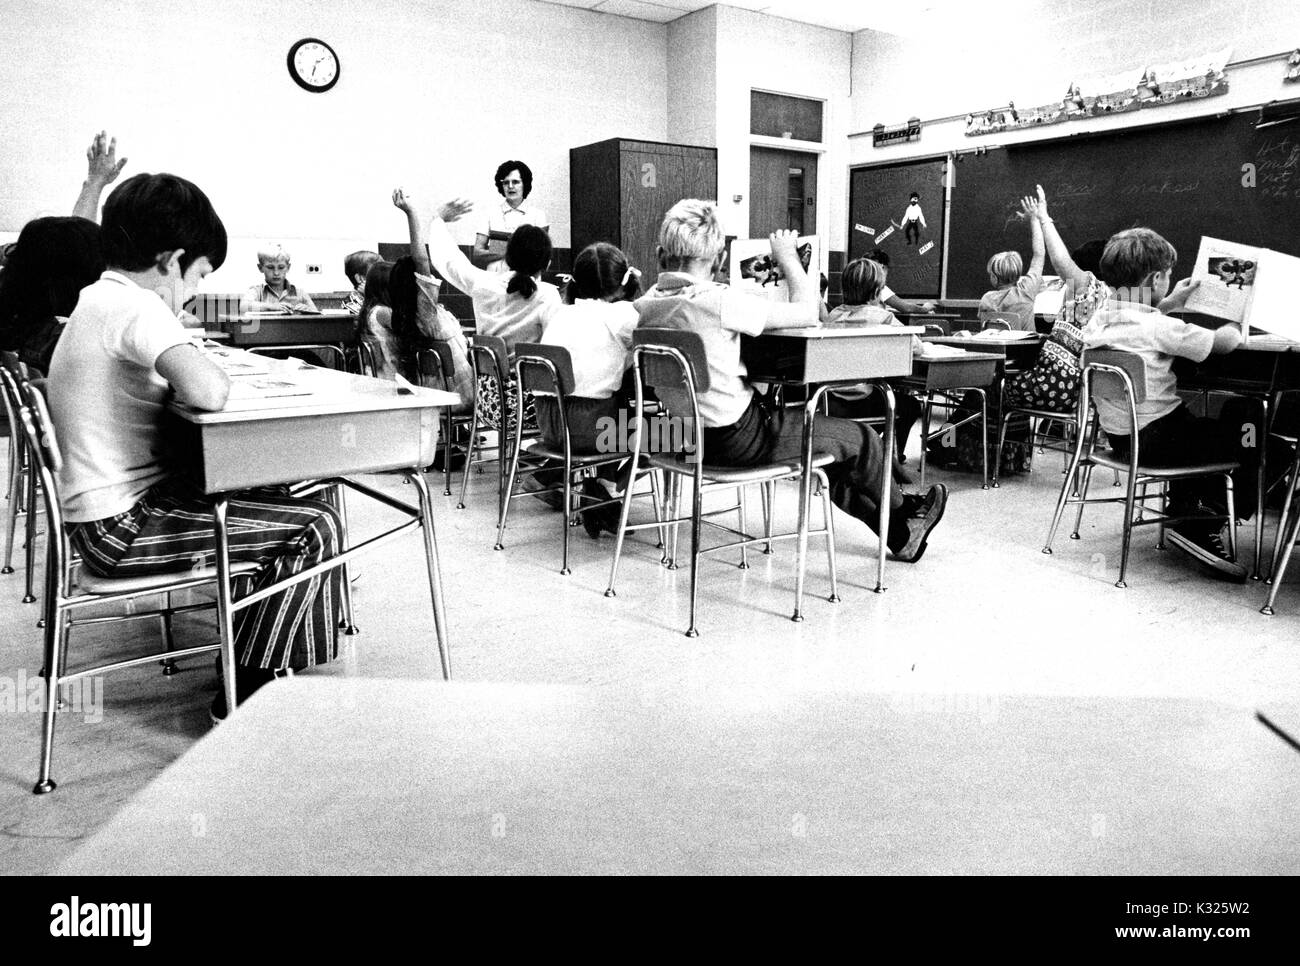 In corrispondenza di una dimostrazione elementare Scuola per Johns Hopkins University, i ragazzi e le ragazze siedono nei banchi in una classe, mentre l'insegnante femminile si erge sul lato della camera, e numerosi studenti alzare le loro mani per rispondere a una domanda, Baltimore, Maryland, Giugno 1975. Foto Stock